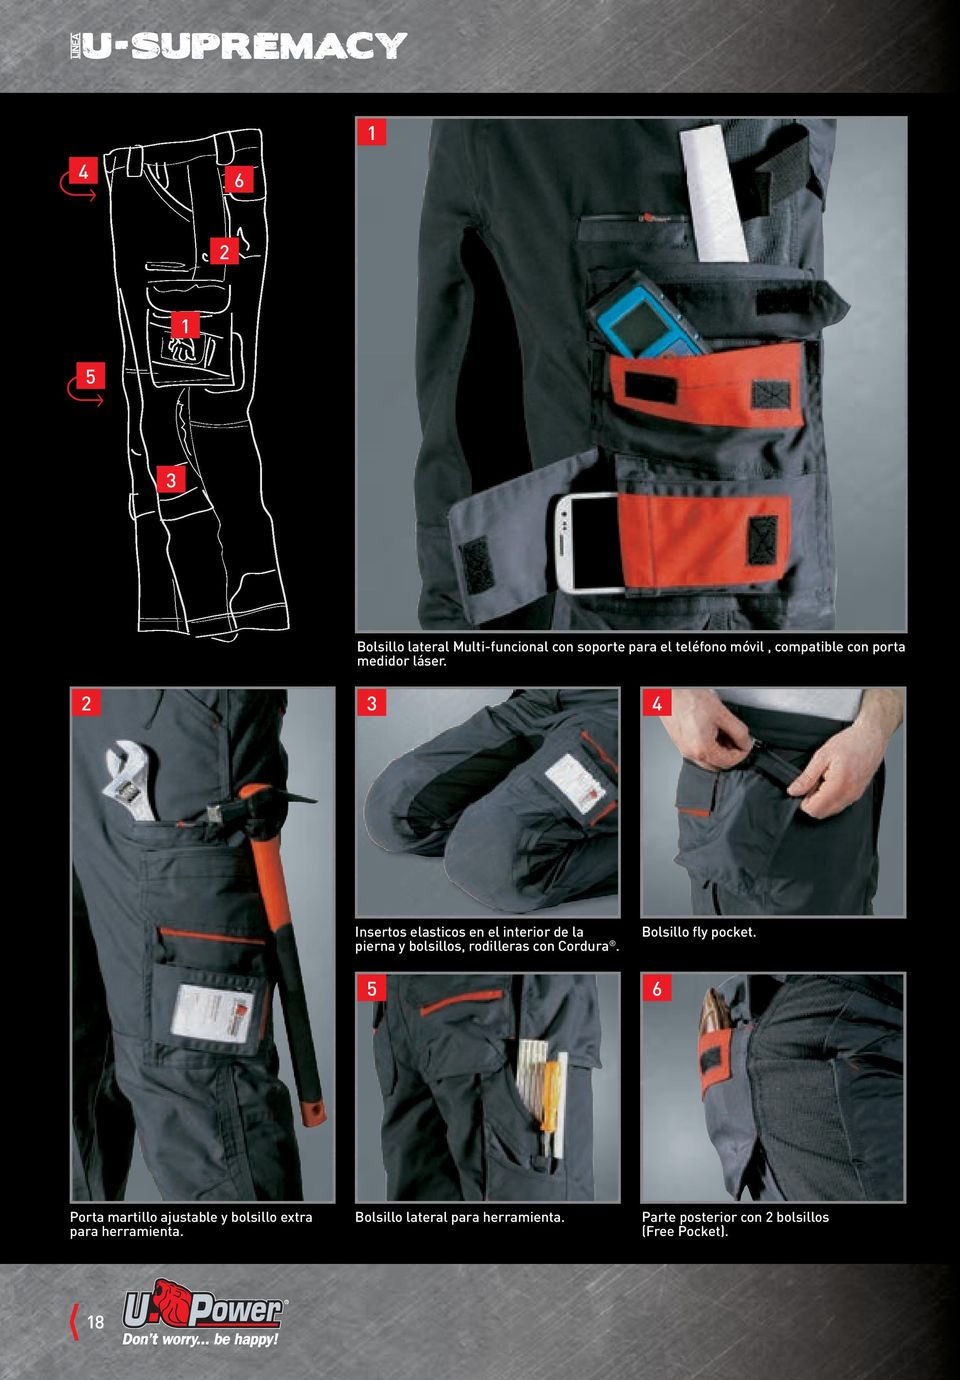 2 3 4 insertos elasticos en el interior de la pierna y bolsillos, rodilleras con Cordura.